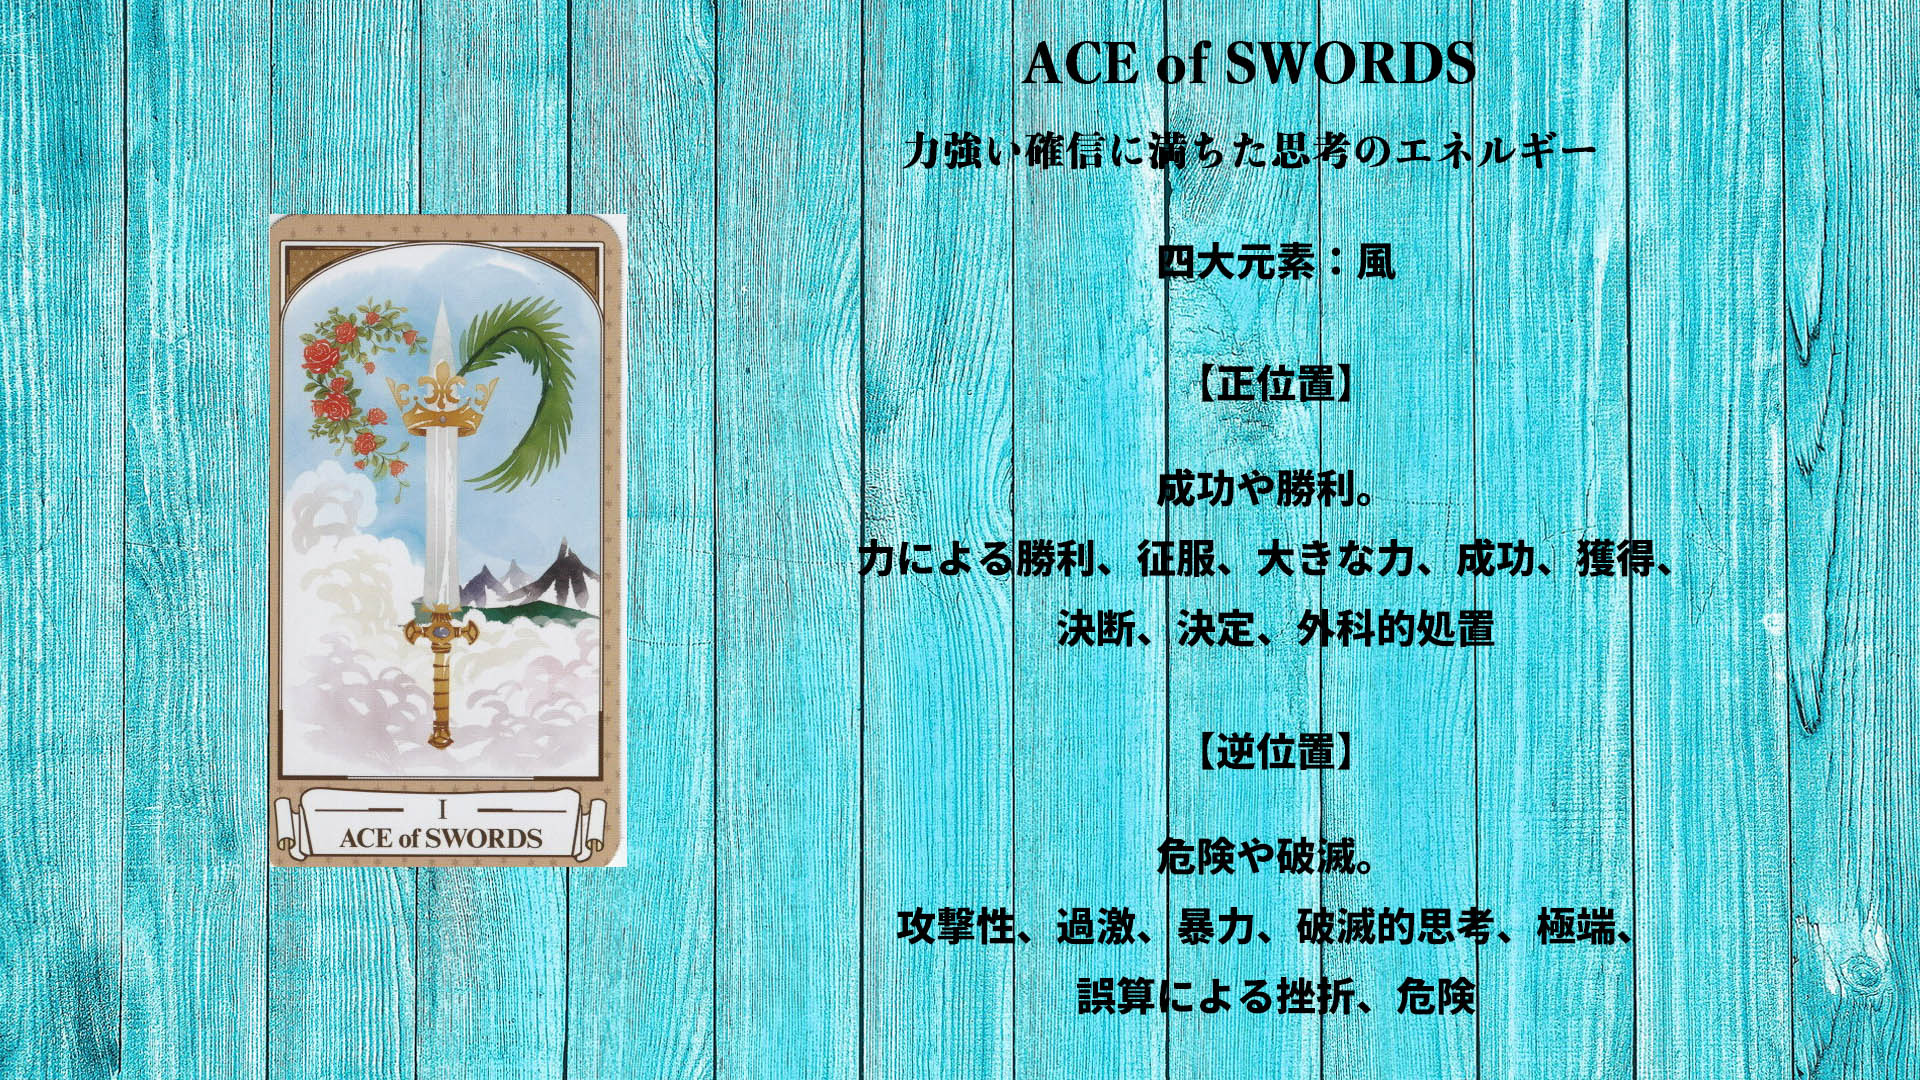 S01_ACE of SWORDS